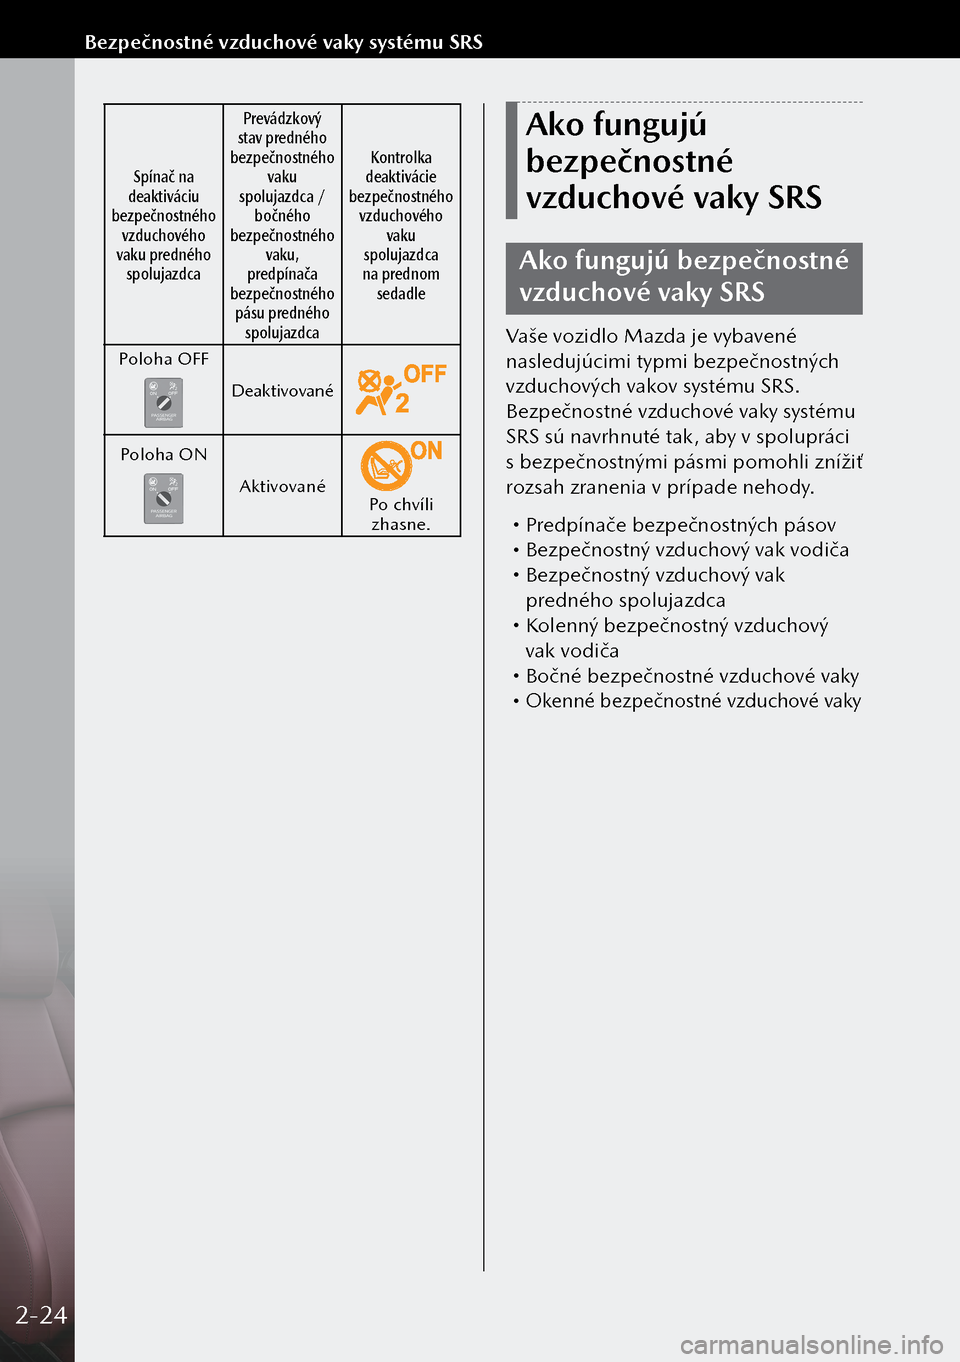 MAZDA MODEL 3 HATCHBACK 2019  Užívateľská príručka (in Slovak) Spínač na 
deaktiváciu 
bezpečnostného  vzduchového 
vaku predného  spolujazdca Prevádzkový 
stav predného 
bezpečnostného  vaku 
spolujazdca /  bočného 
bezpečnostného  vaku, 
predp�